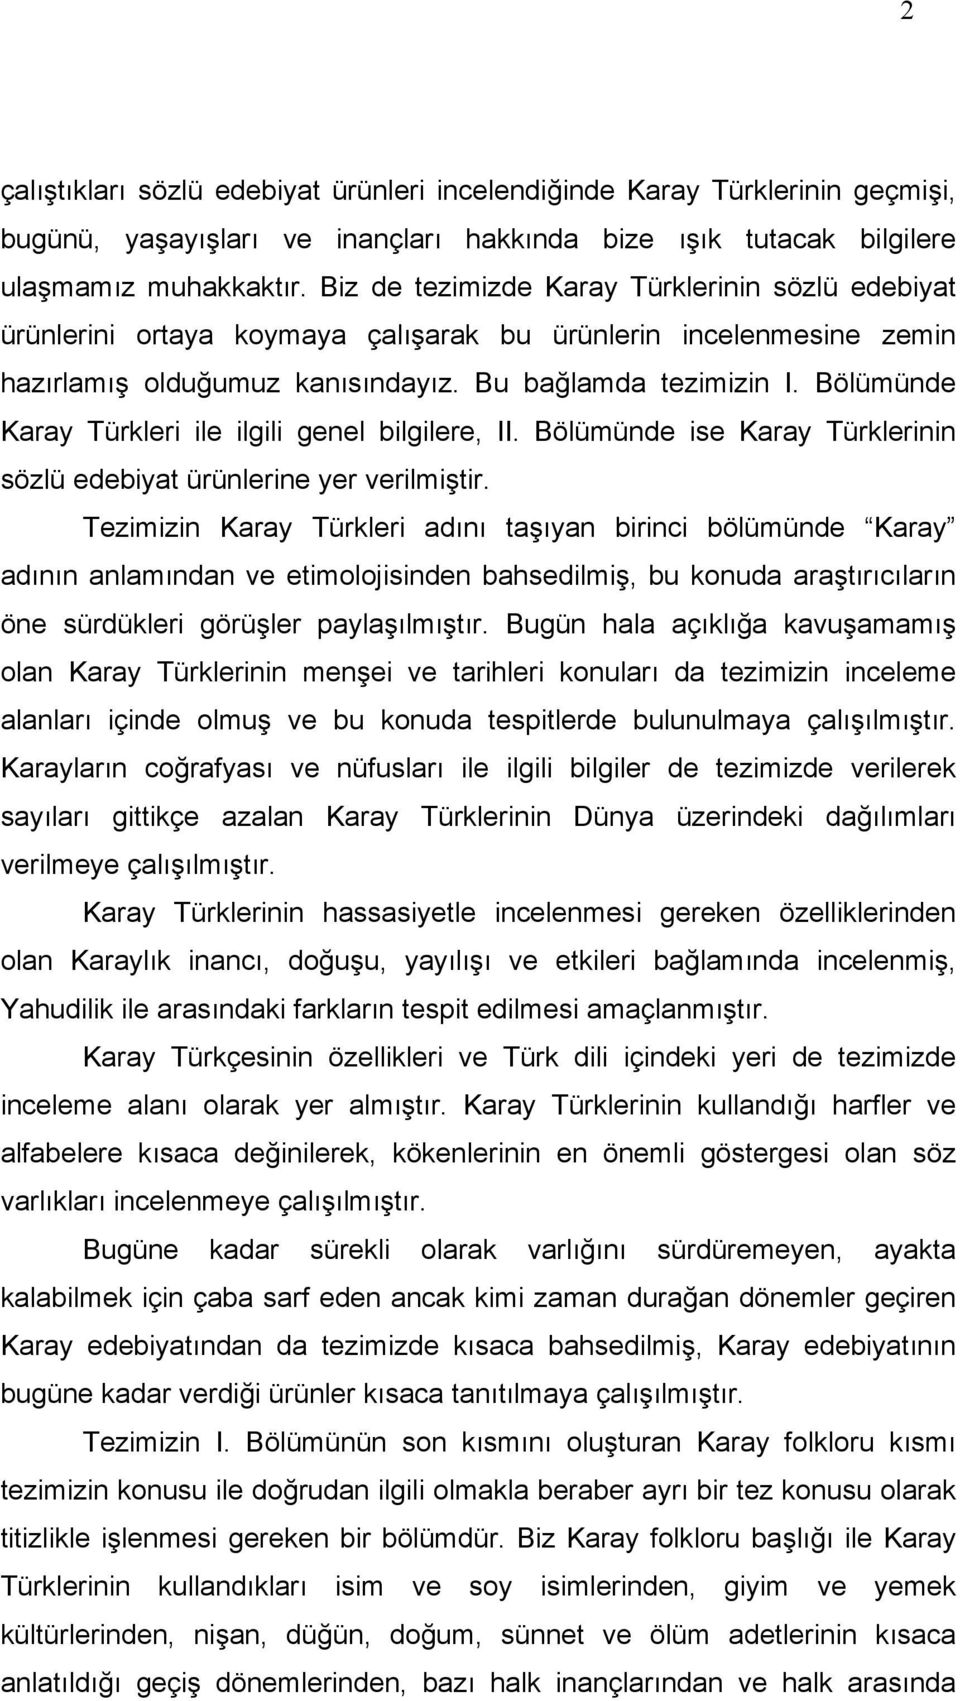 Bölümünde Karay Türkleri ile ilgili genel bilgilere, II. Bölümünde ise Karay Türklerinin sözlü edebiyat ürünlerine yer verilmiştir.